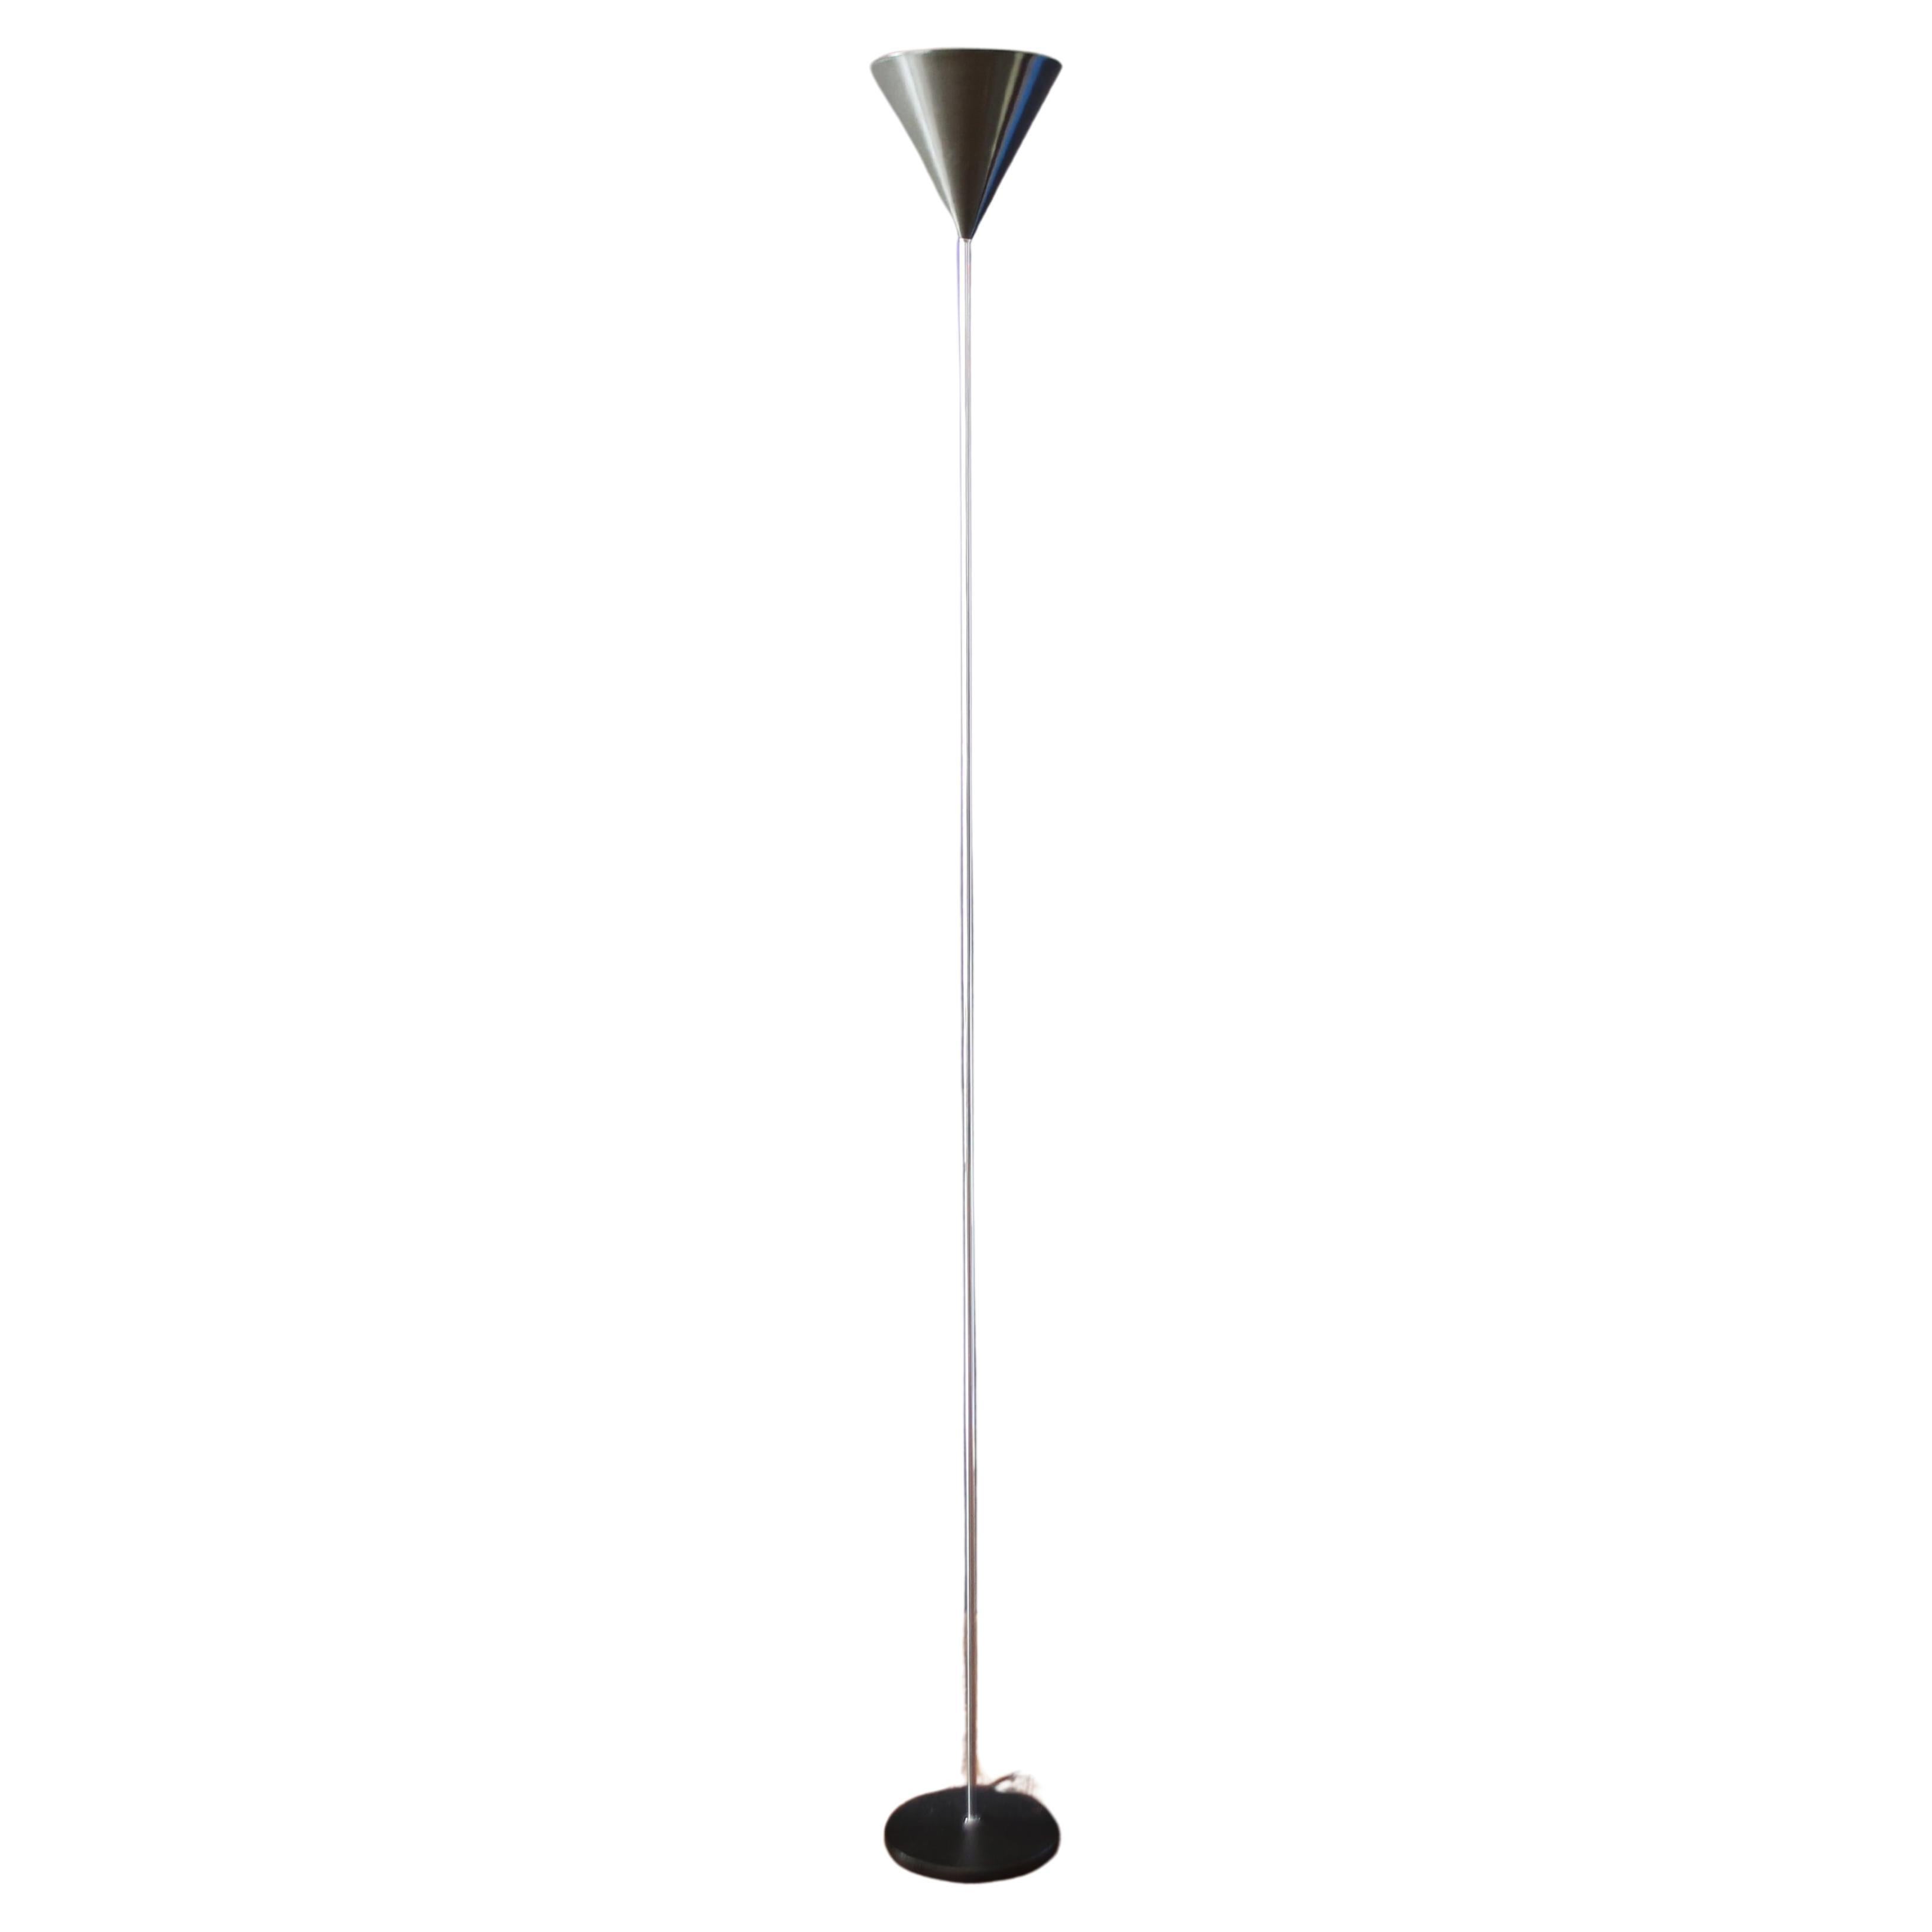 Luigi Caccia Dominioni  Funnel floor lamp  modell (LTE5) for azucena. For Sale